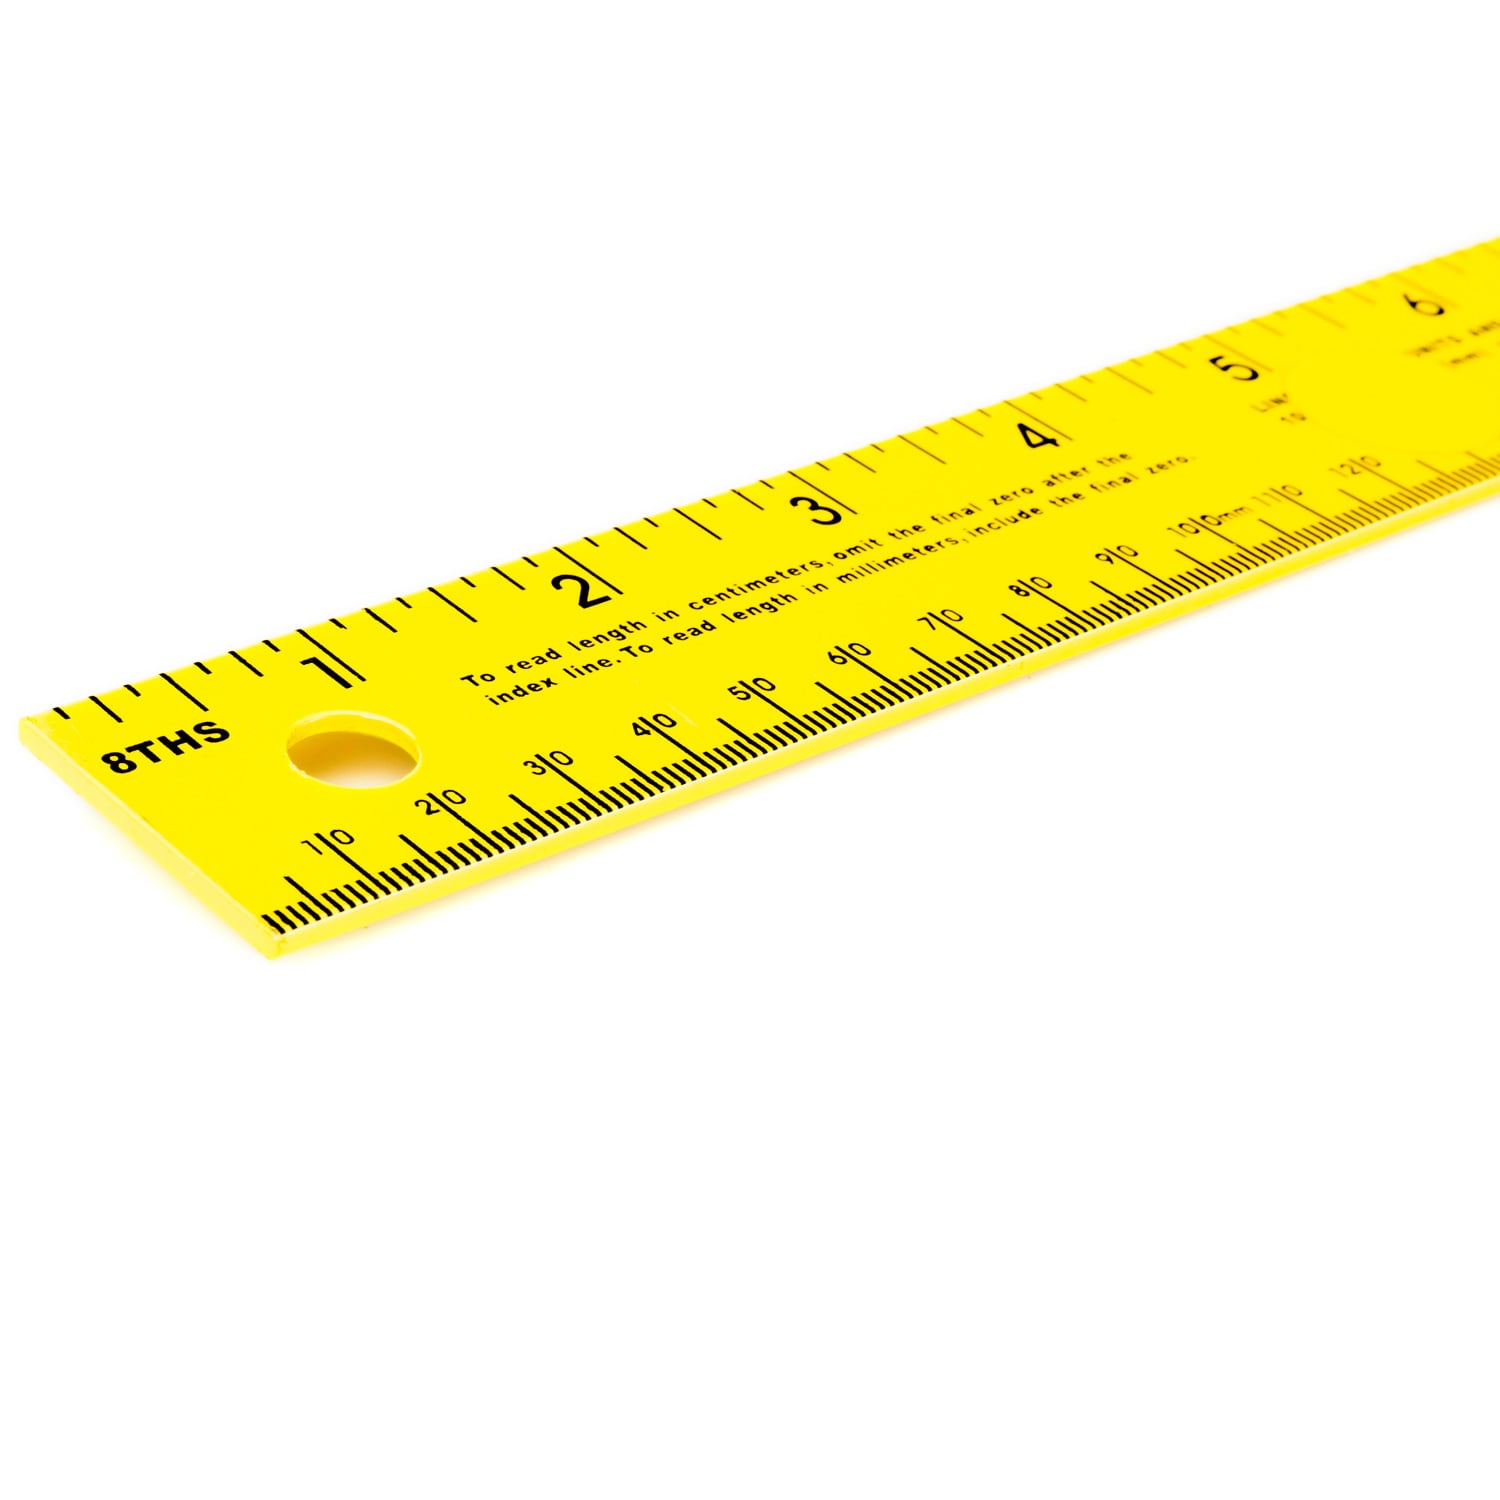 Ruler - Measuring tool